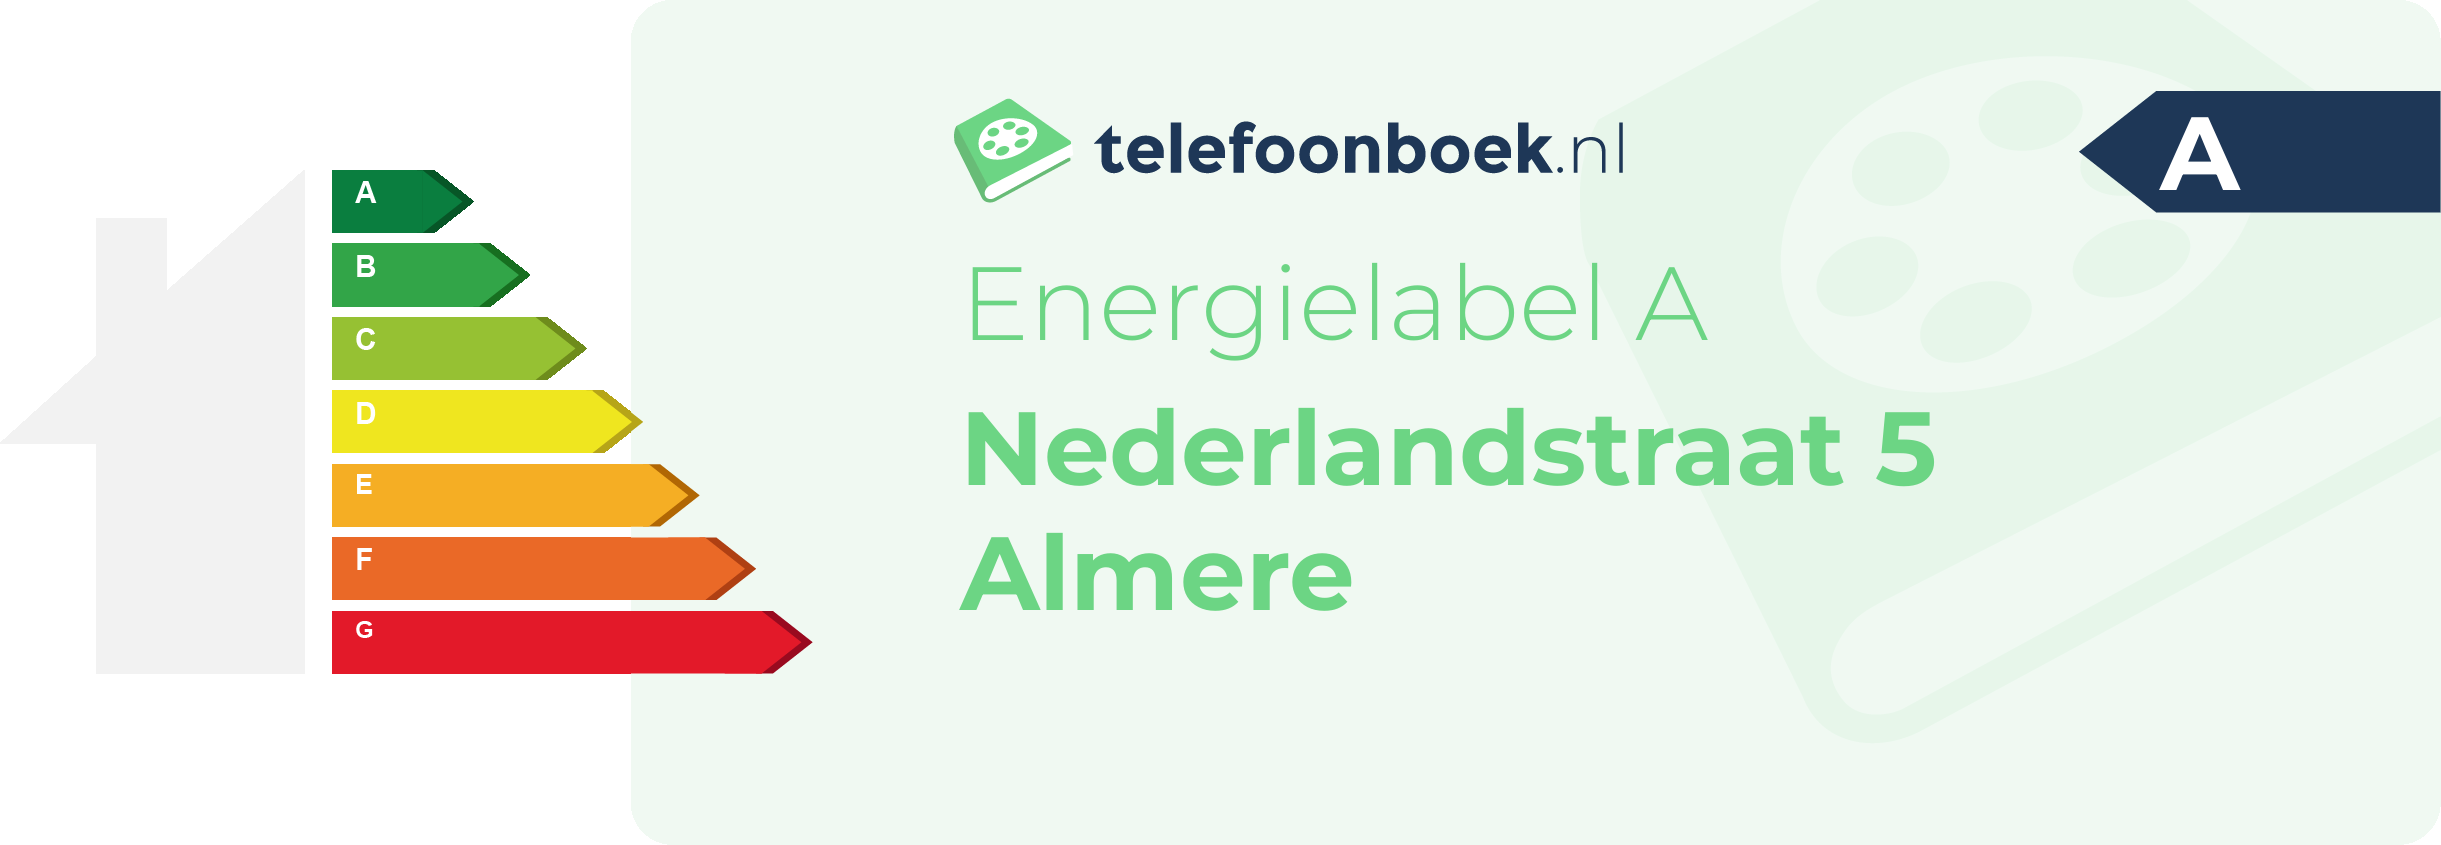 Energielabel Nederlandstraat 5 Almere